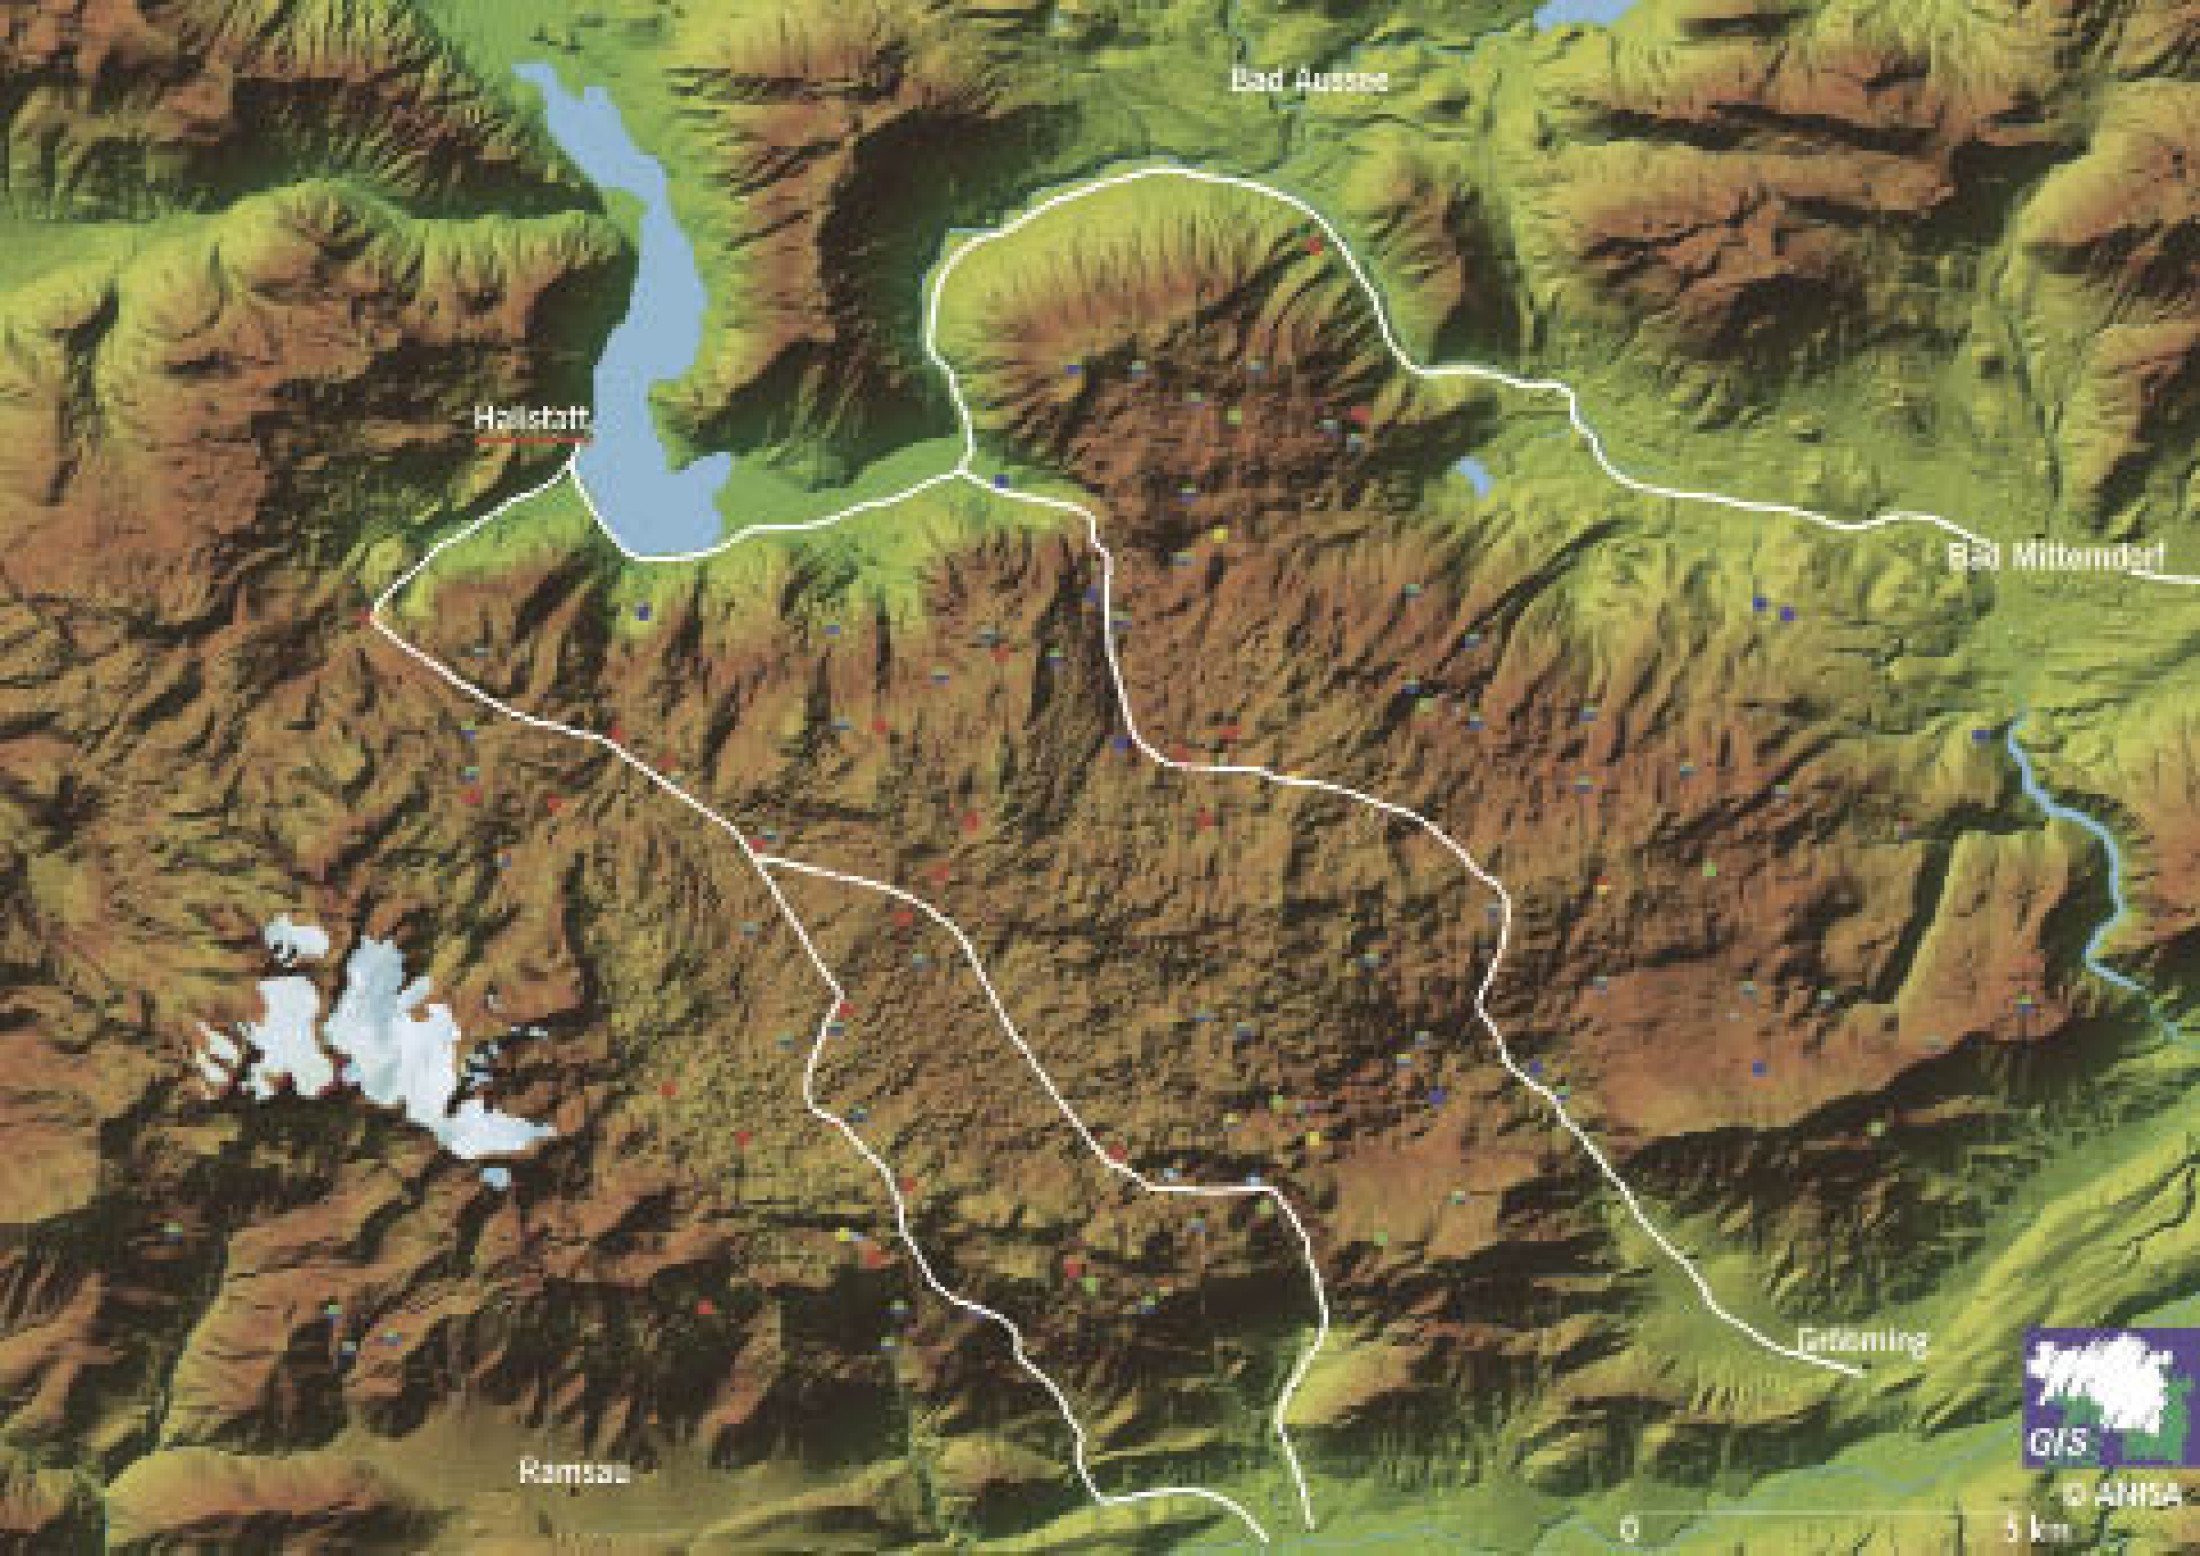 : Fundkarte des Dachsteingebirges mit den wichtigsten Wegeverbindungen von Hallstatt in das Ennstal. (Bild: ANISA)